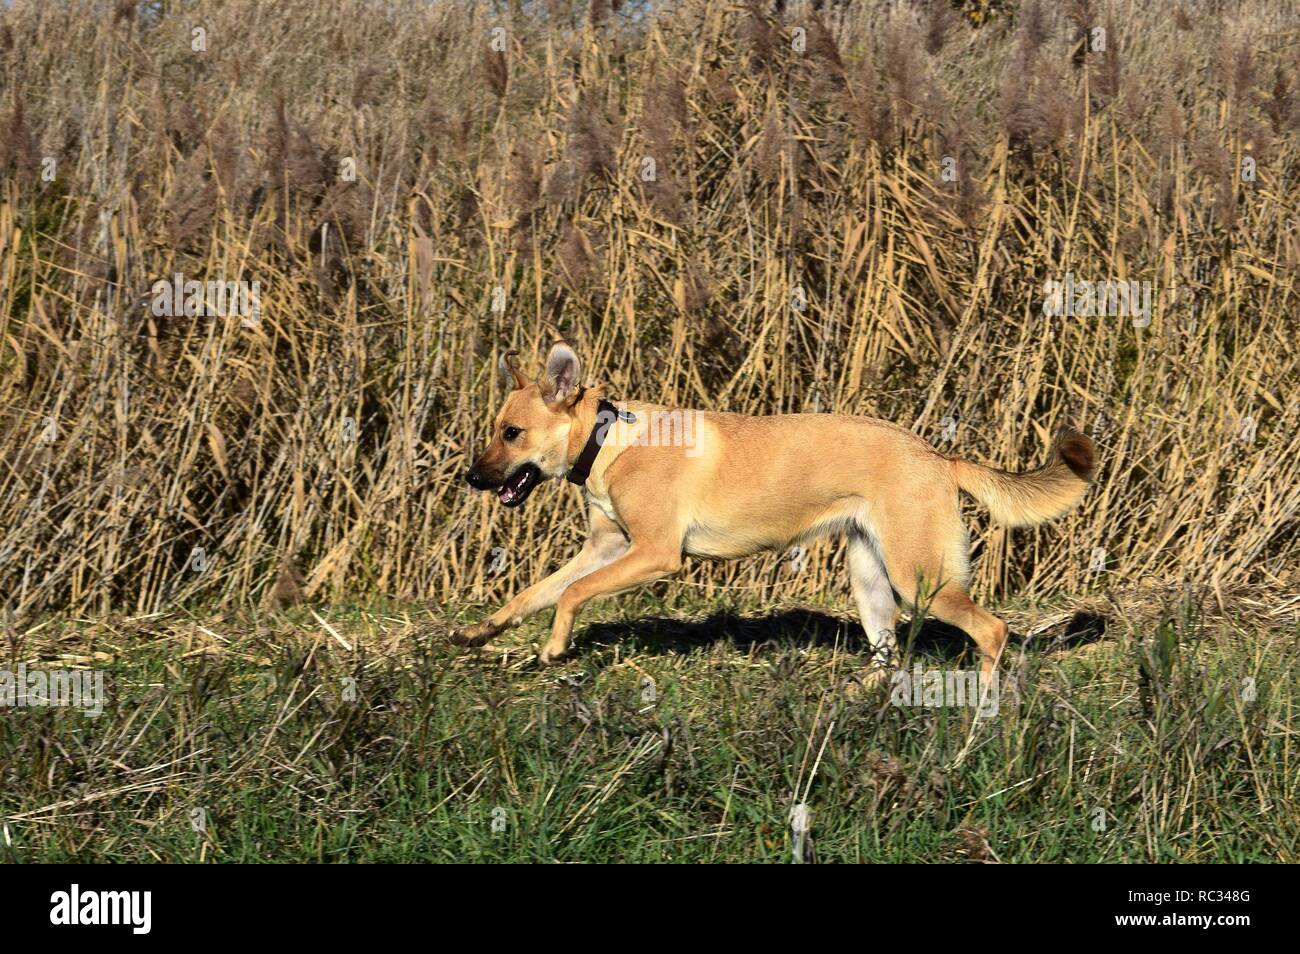 Race mixte de couleur sable, chien qui court sur l'herbe. Épée d'herbe dans l'arrière-plan. Banque D'Images